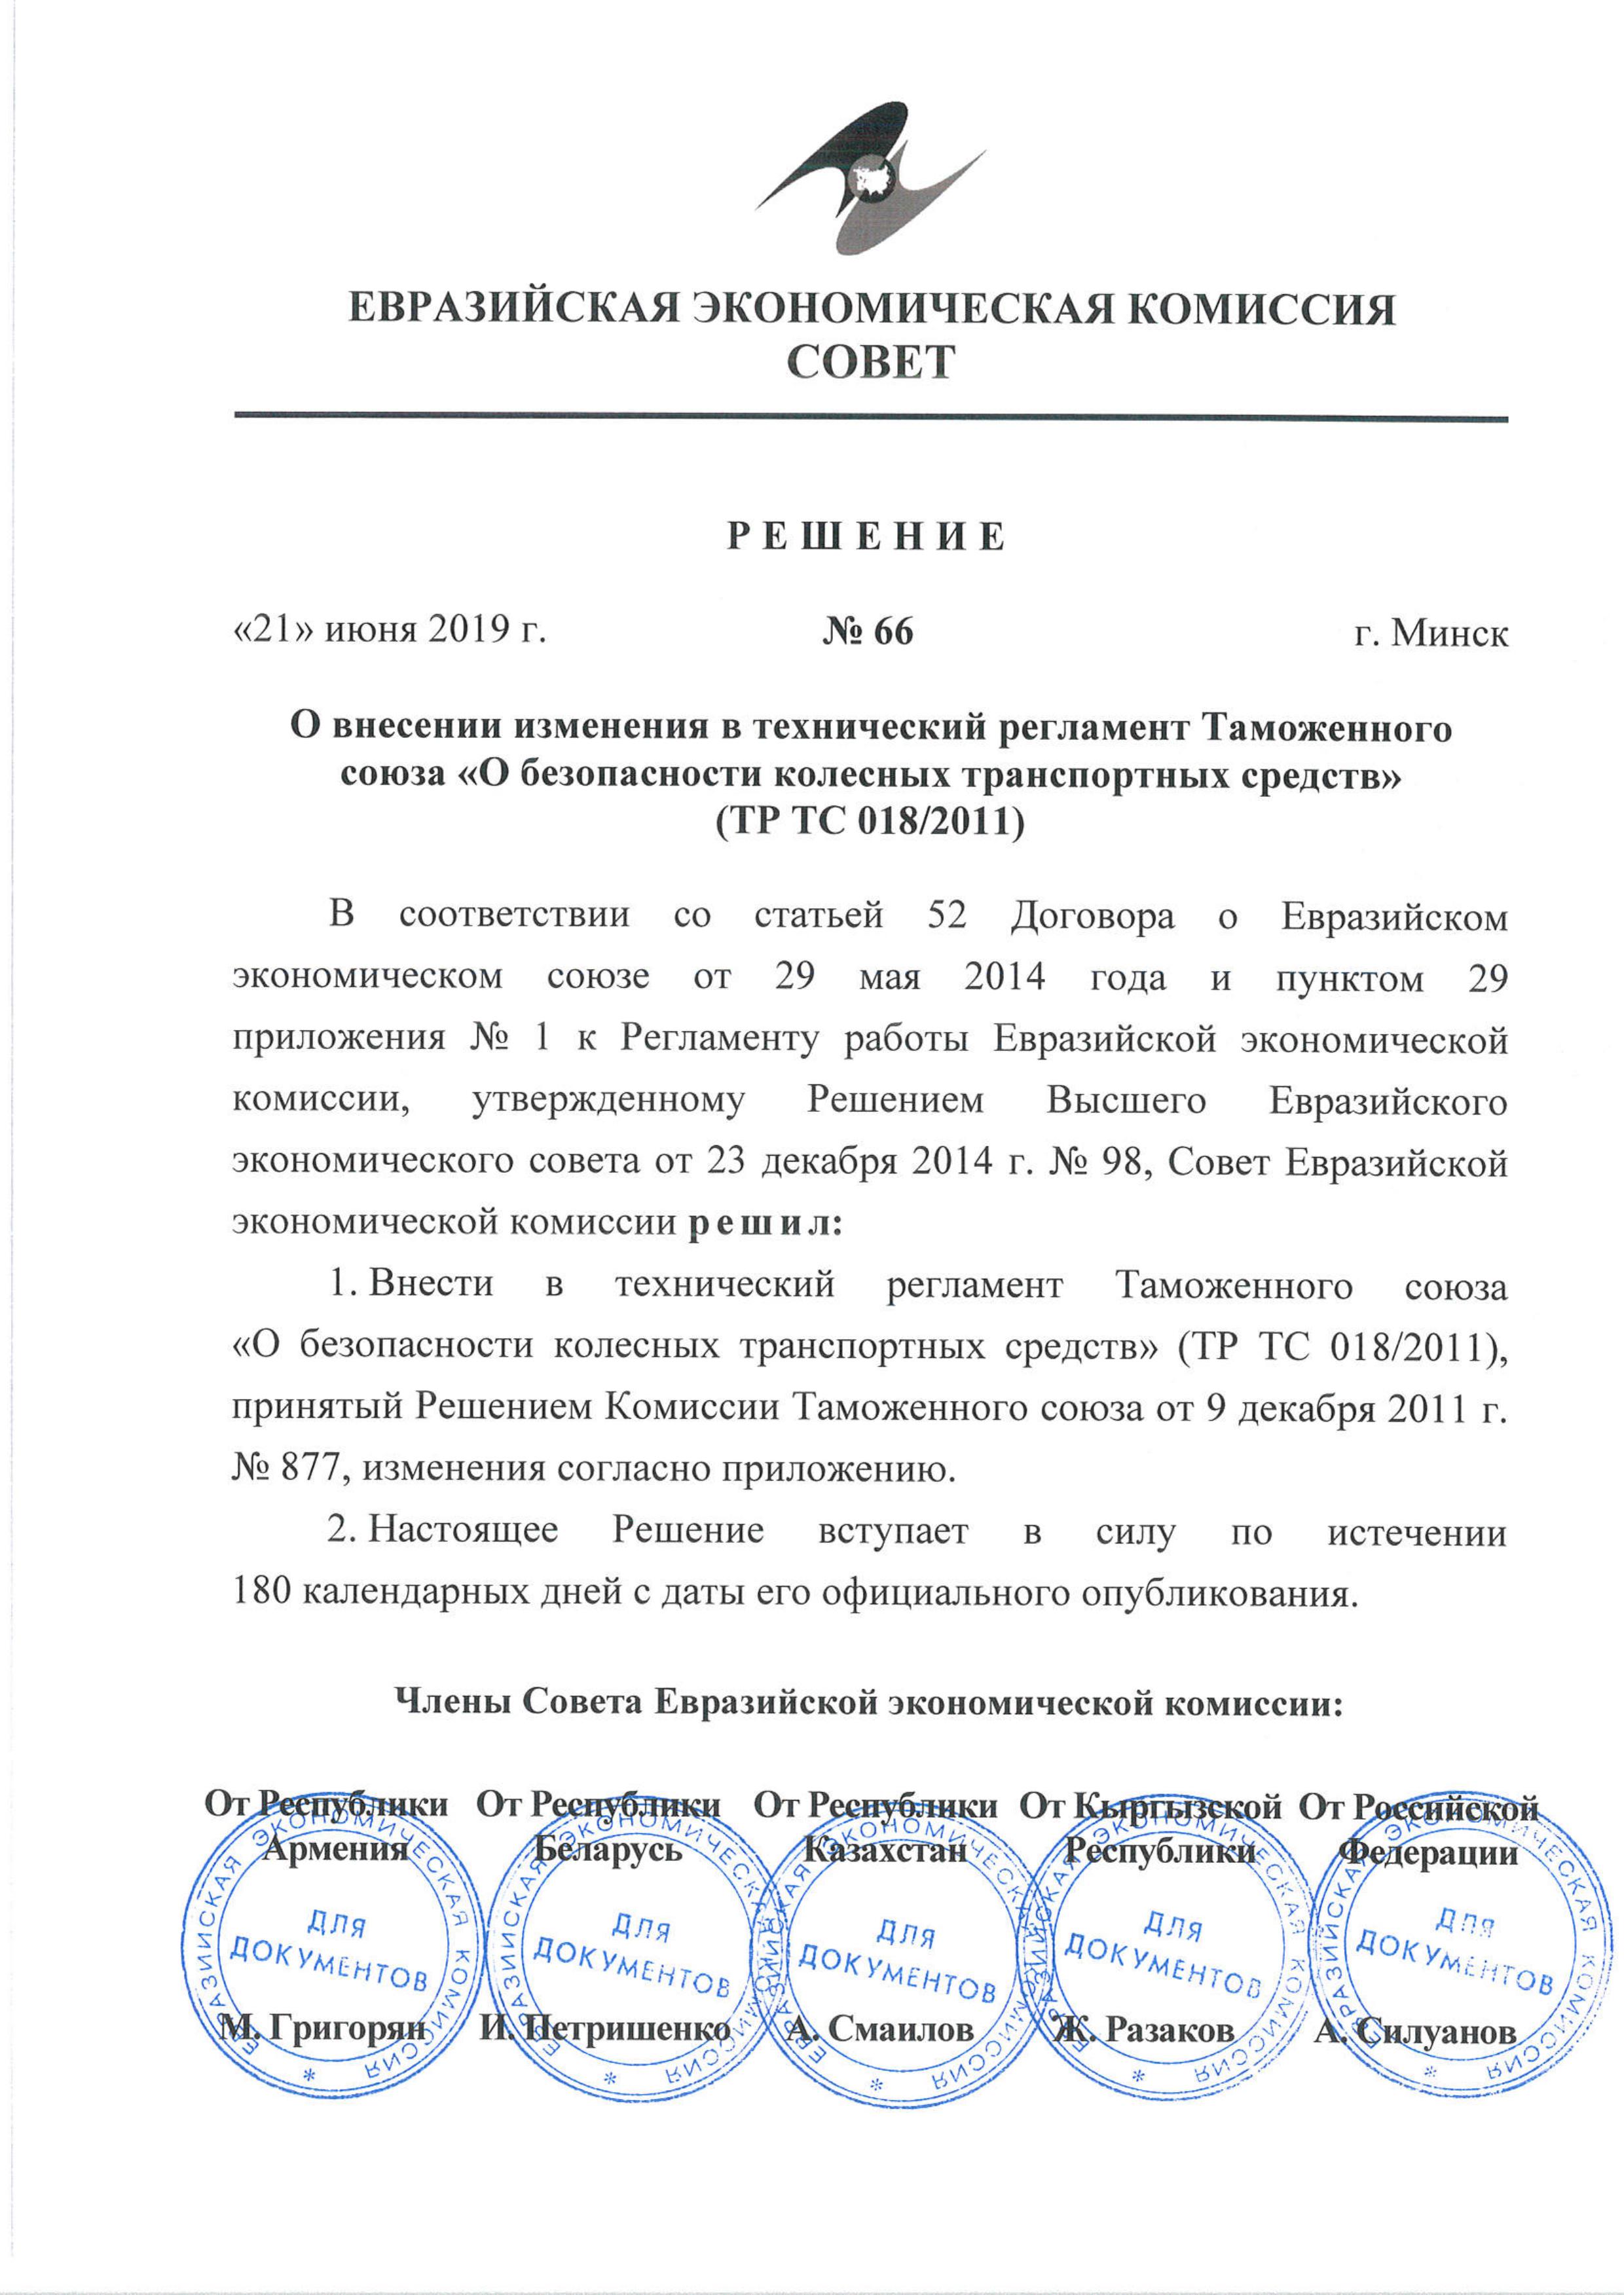 Решение Совета ЕЭК о внесении изменений в ТР ТС 018_2011 № 66 от 21.06.2019